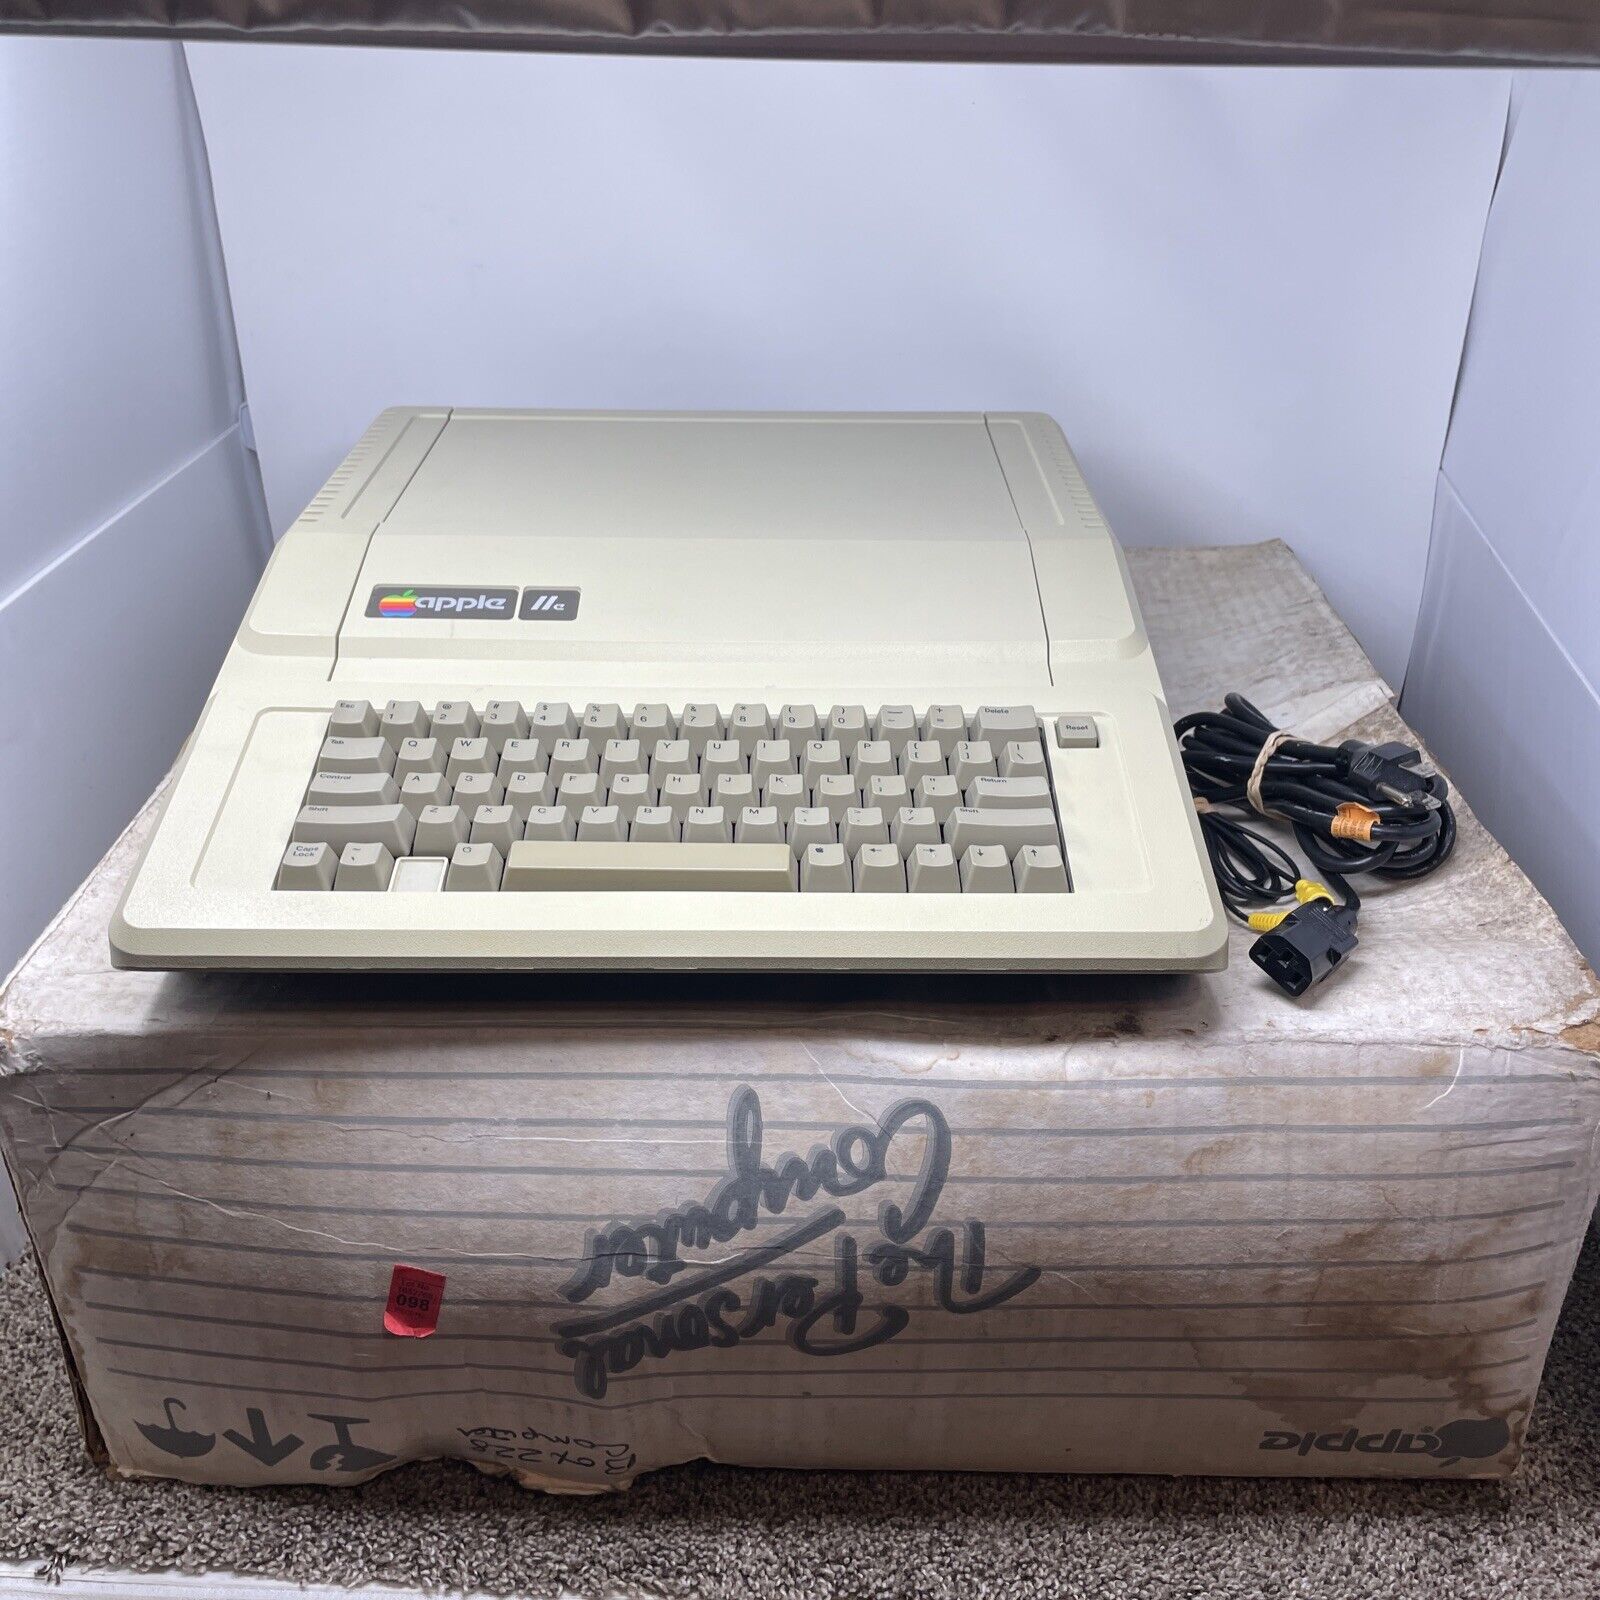 Apple IIe Vintage 🍎 Computer Retro Gaming In Original Box No Power Supply